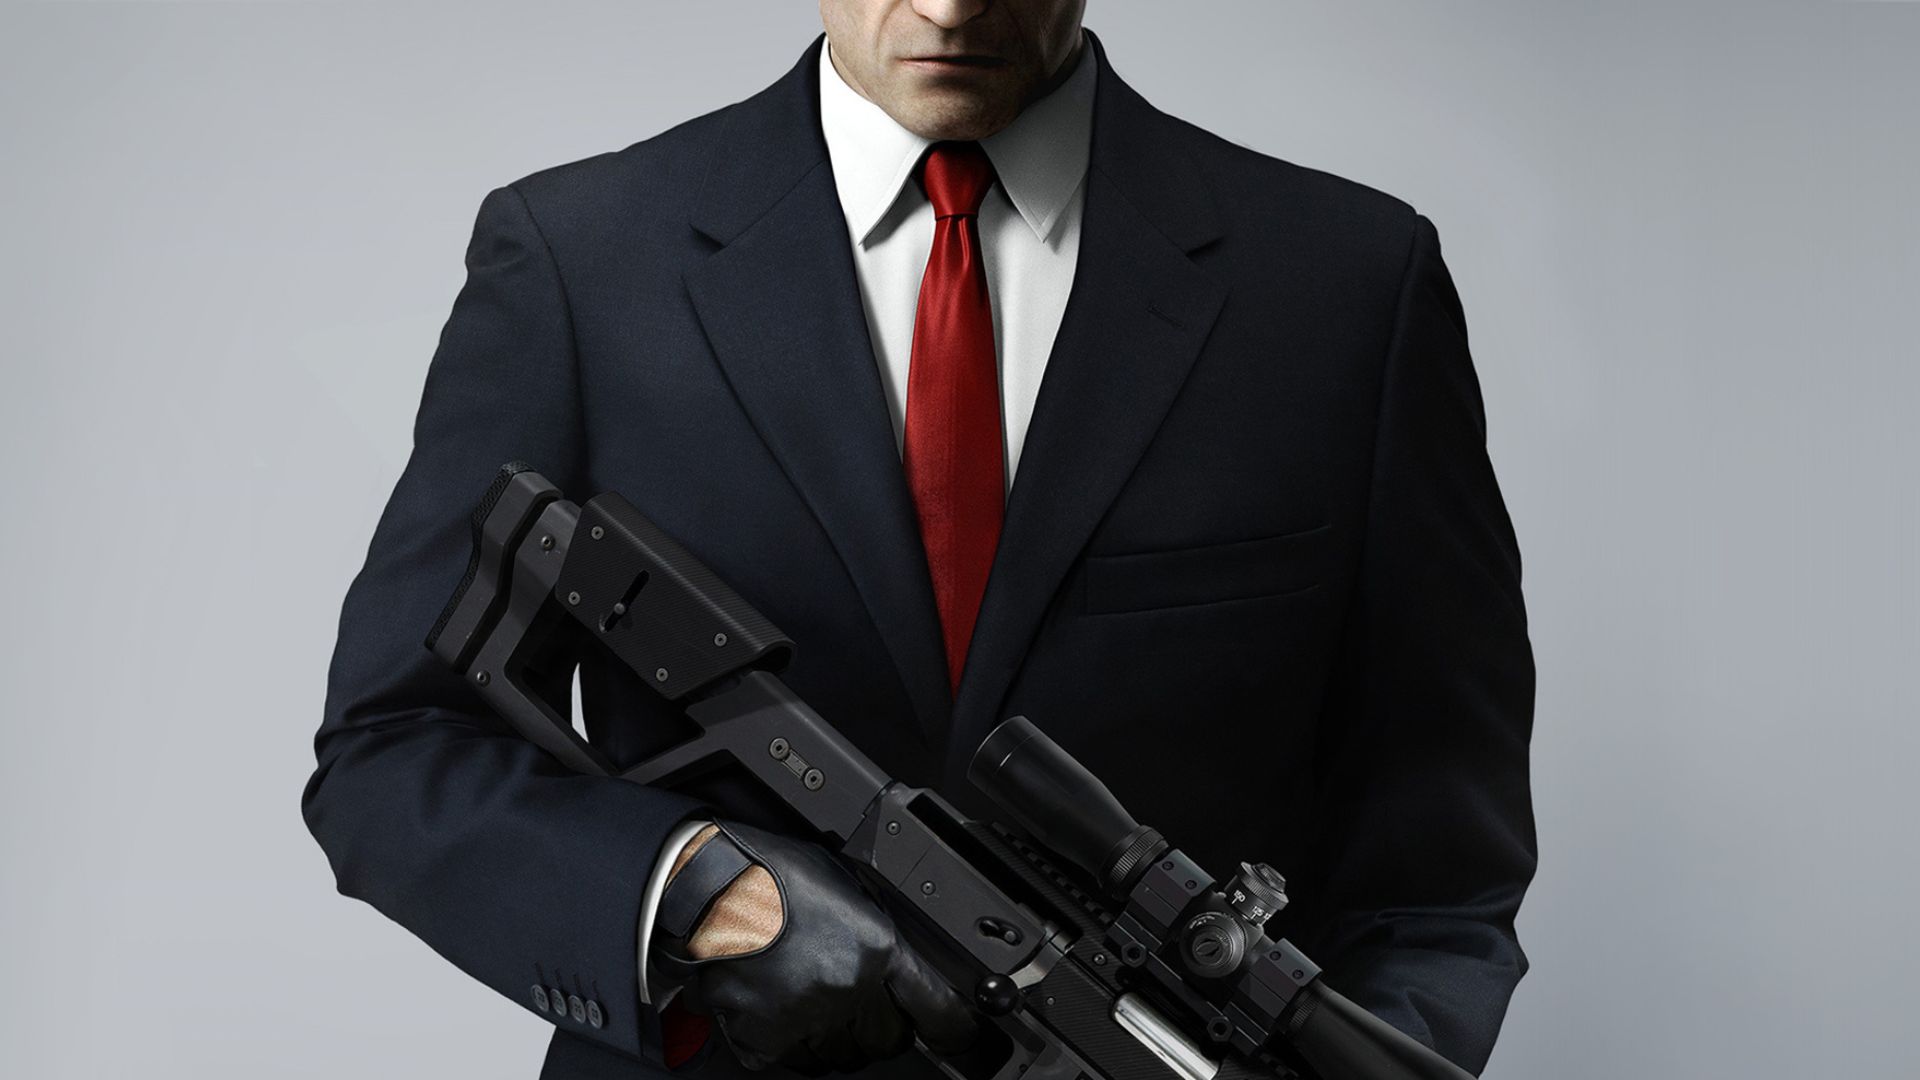 FPS ゲーム - 黒いスーツ、赤いネクタイ、白いシャツを着た男性が、スナイパー ライフルをまっすぐ前に向け、顔がフレームで切り取られています。